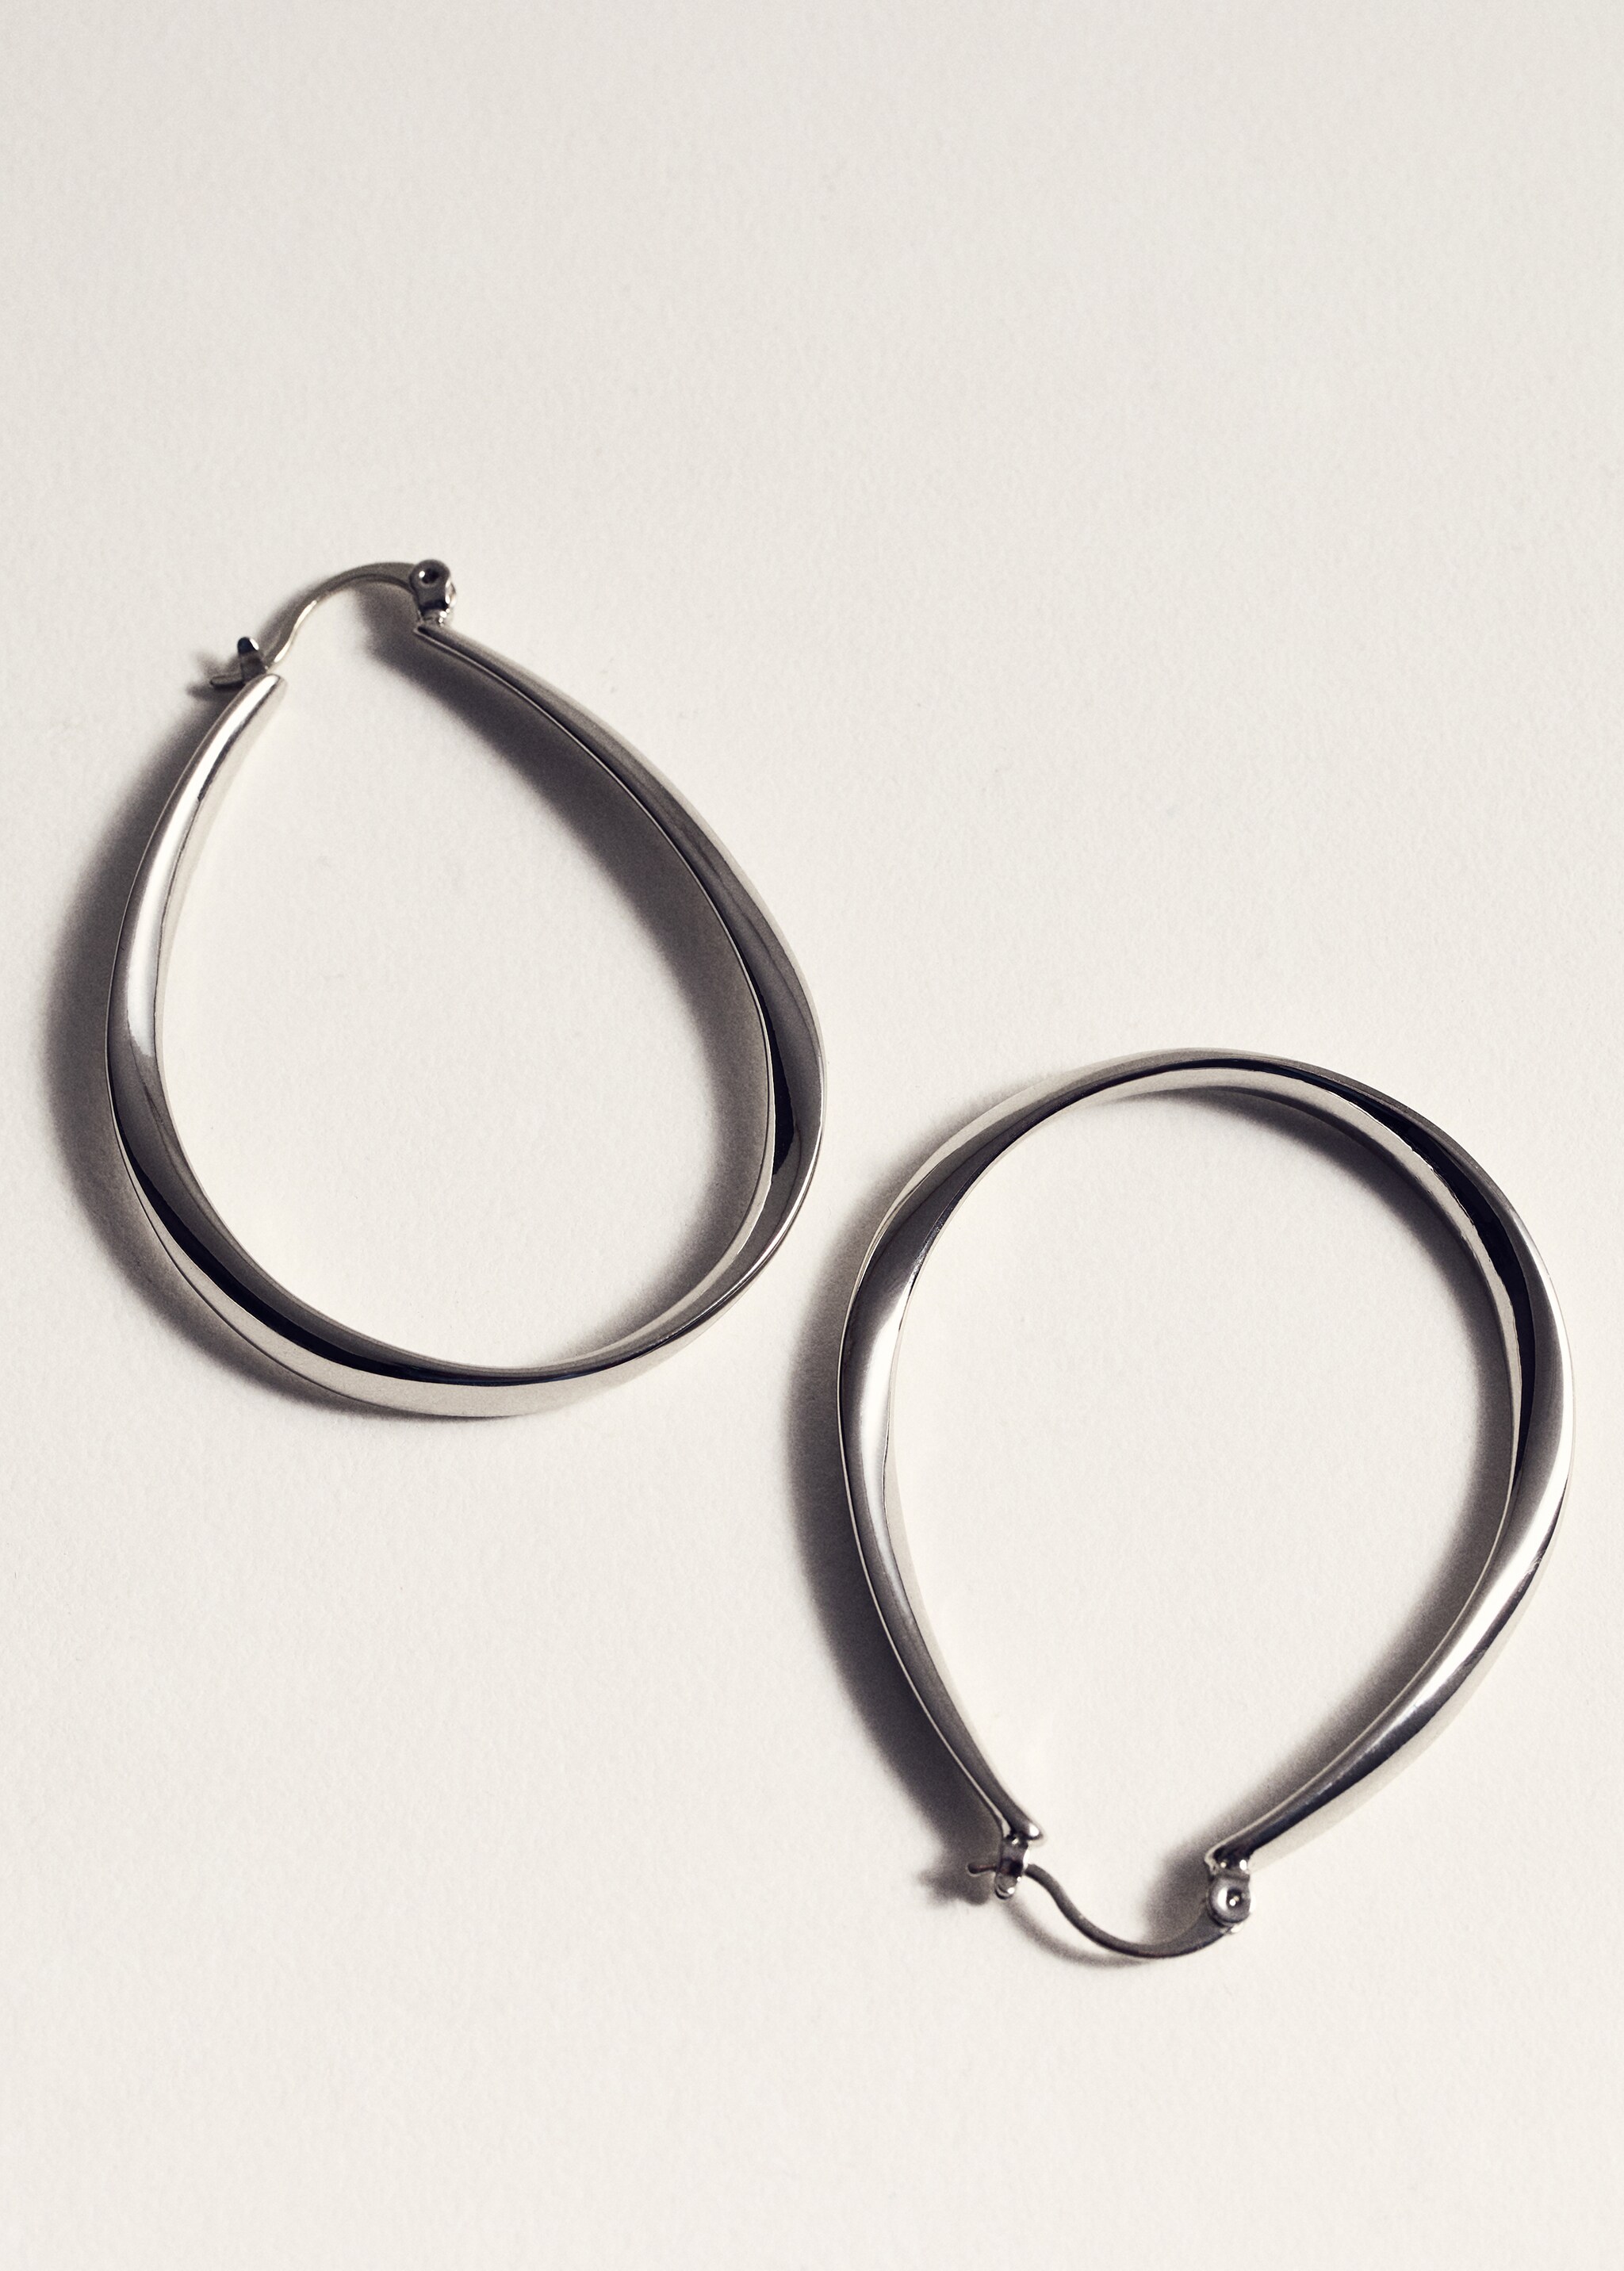 Oval hoop earrings - Details of the article 5